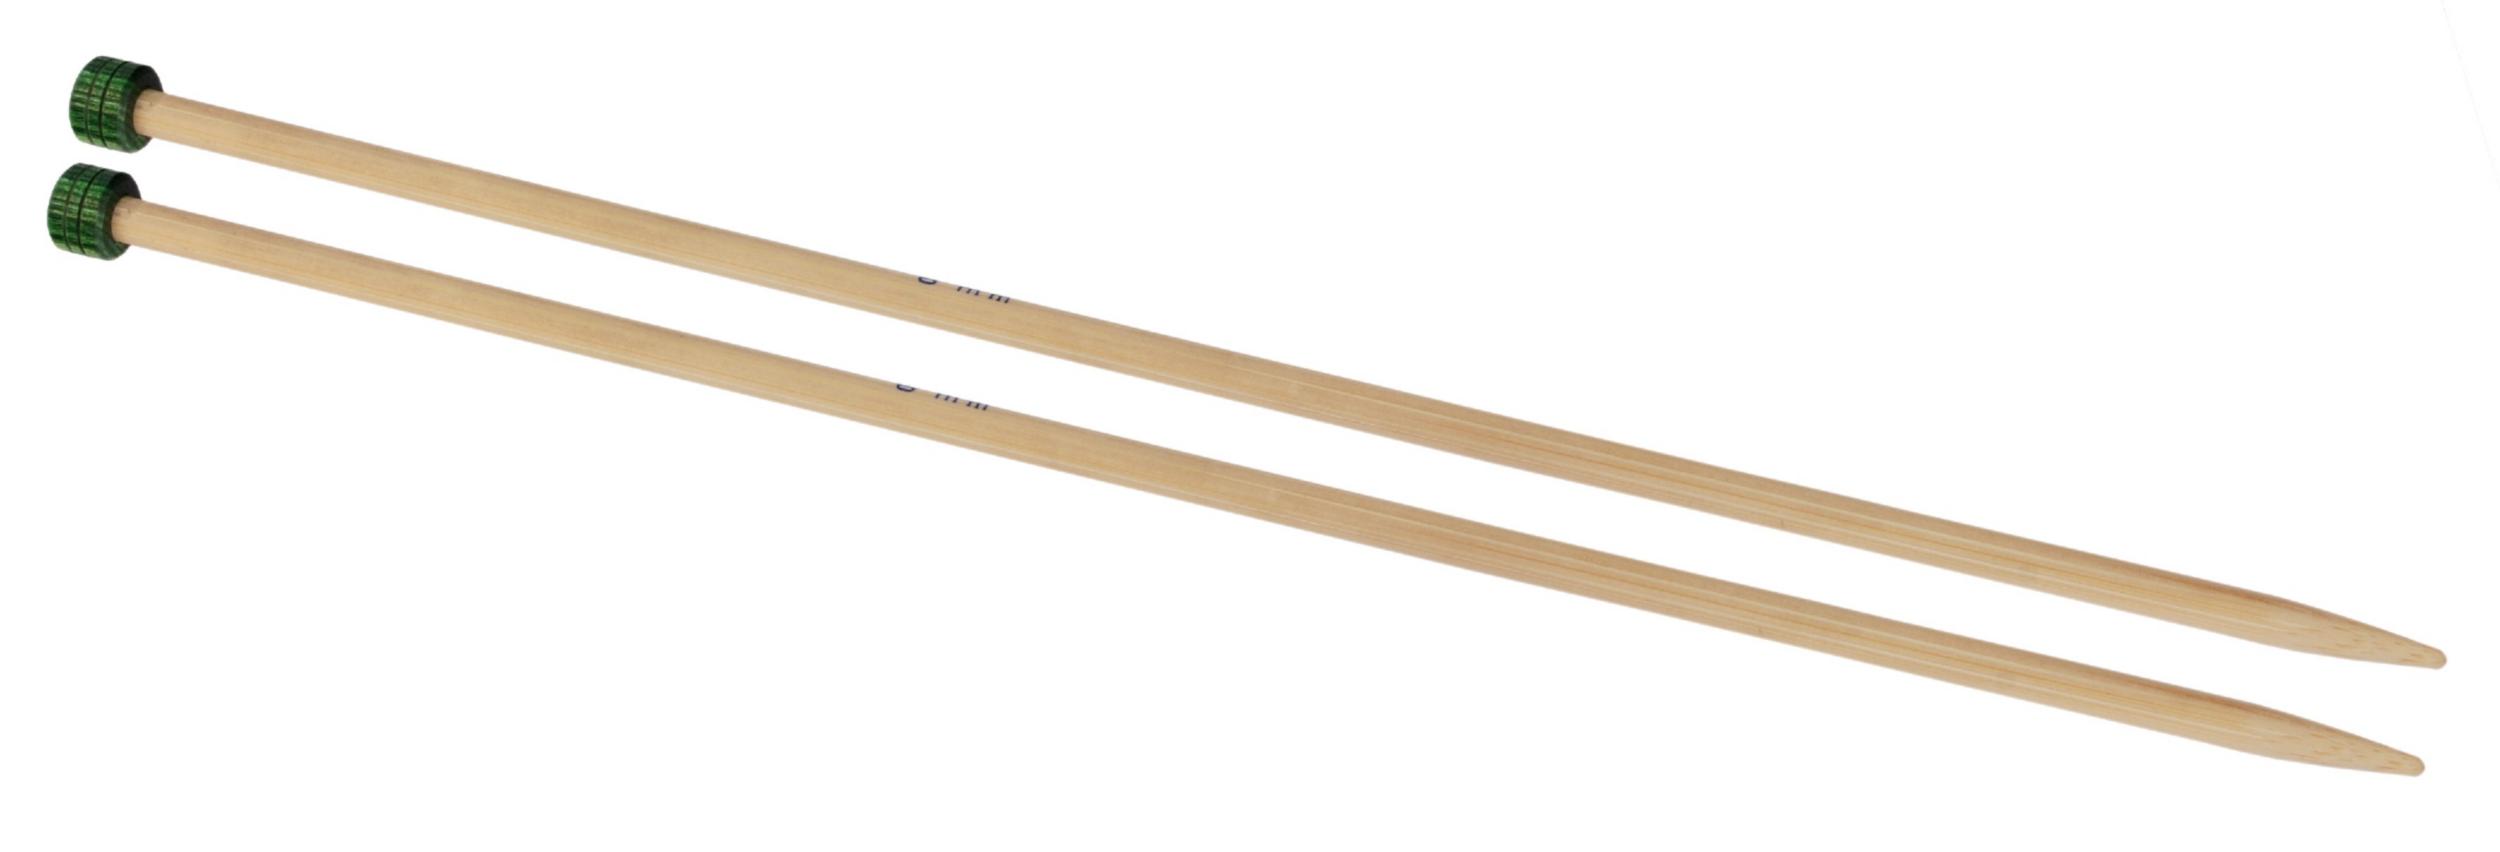 22338 Спиці прямі Bamboo KnitPro, 30 см, 3.75 мм